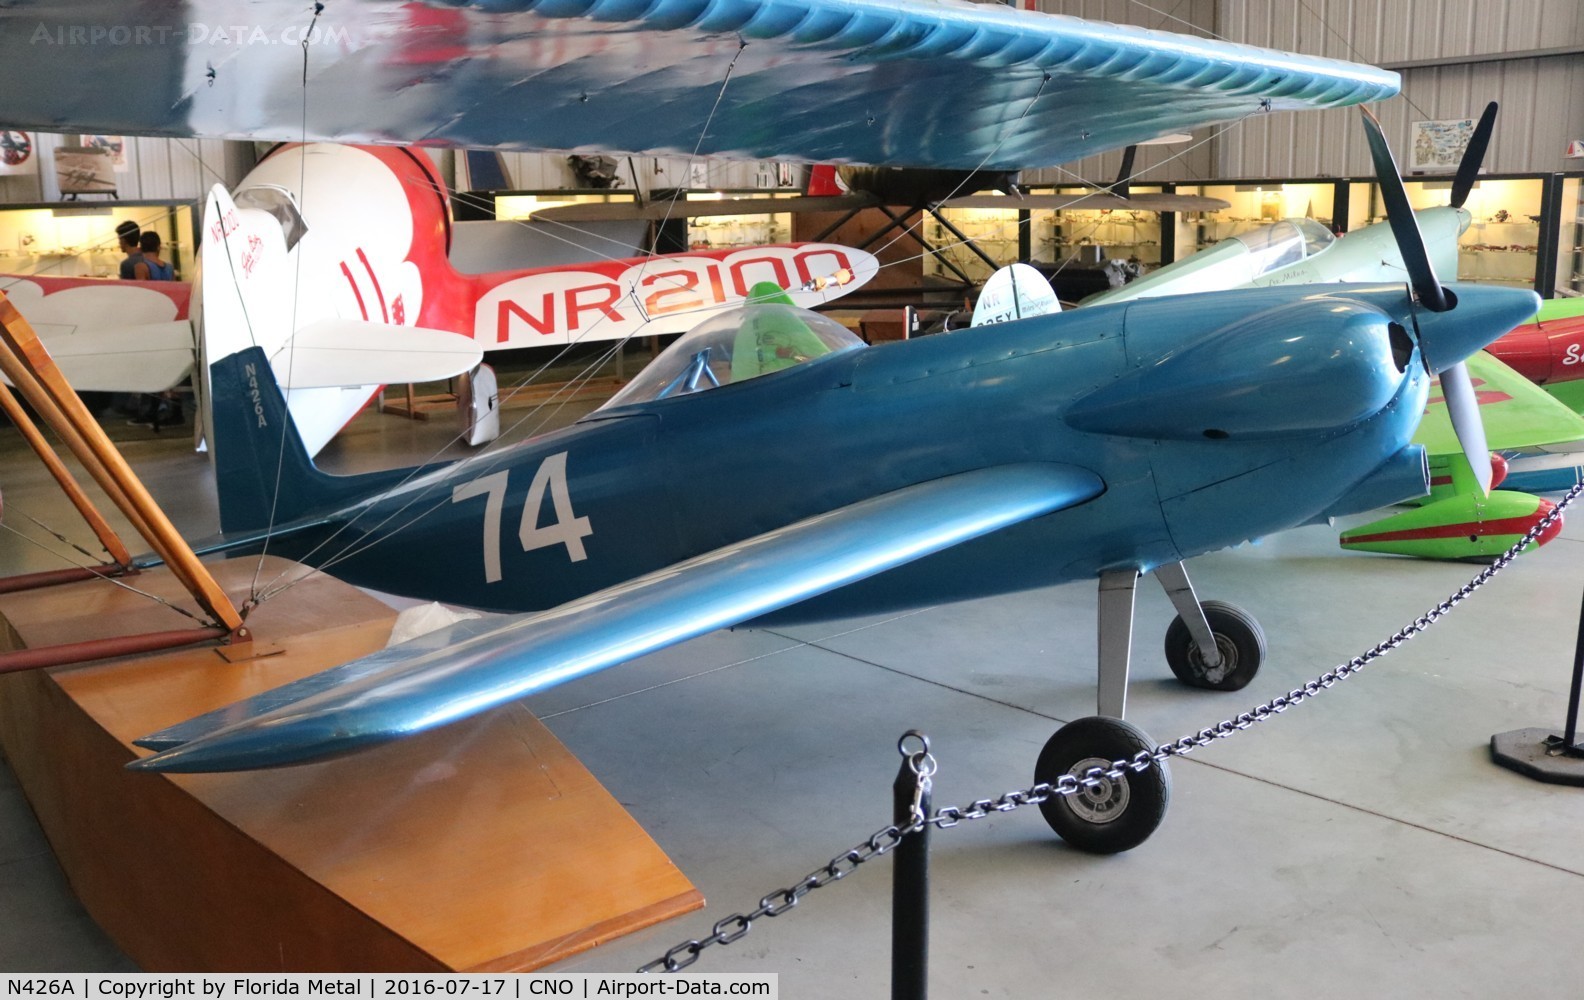 N426A, 1950 Orlowski Henri H O 1 C/N 1, Racer plane